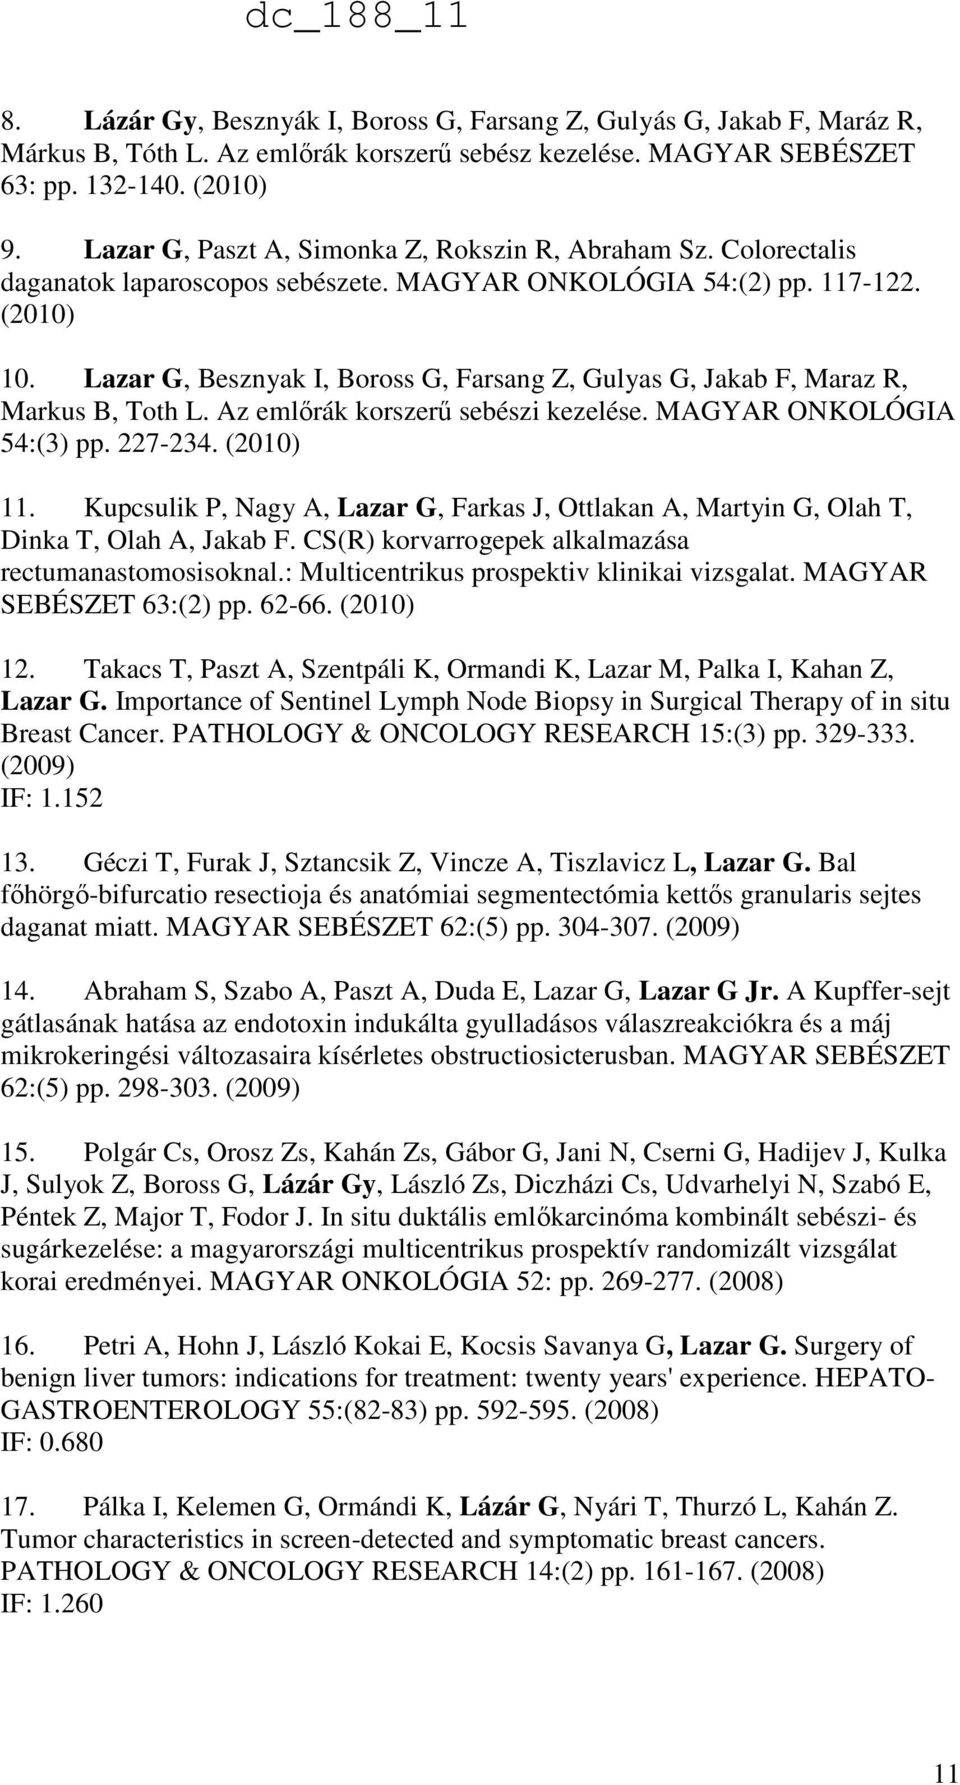 Lazar G, Besznyak I, Boross G, Farsang Z, Gulyas G, Jakab F, Maraz R, Markus B, Toth L. Az emlőrák korszerű sebészi kezelése. MAGYAR ONKOLÓGIA 54:(3) pp. 227-234. (2010) 11.